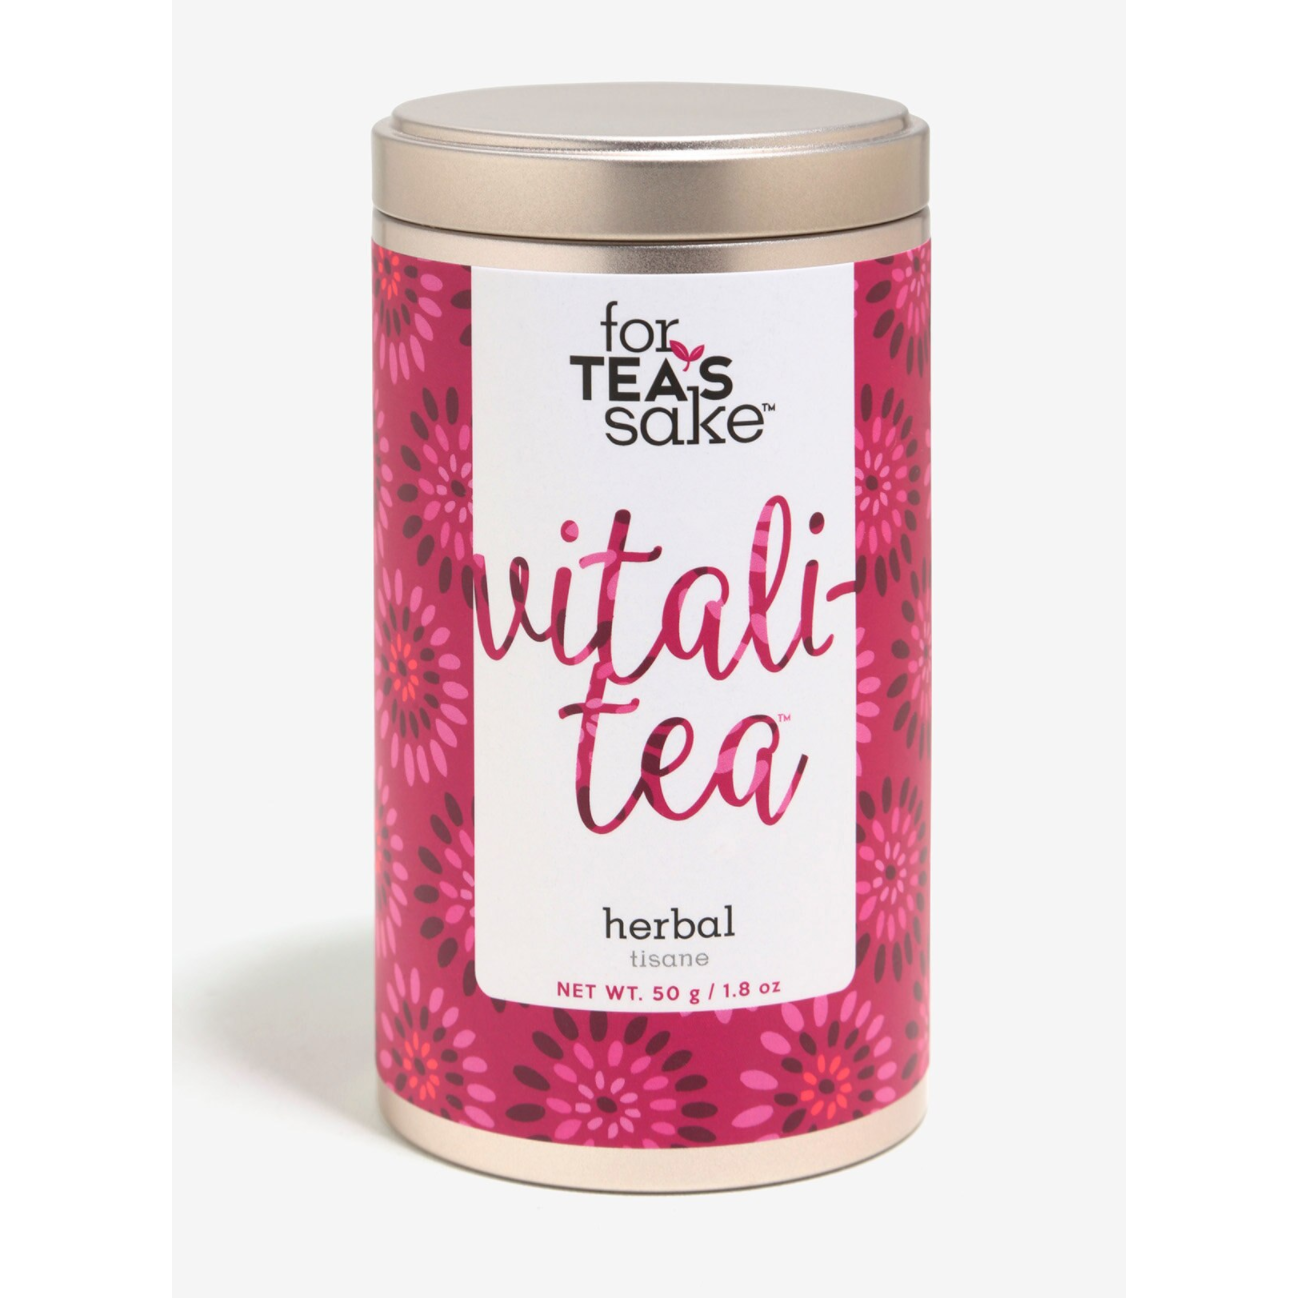 Vitali Tea Herbal